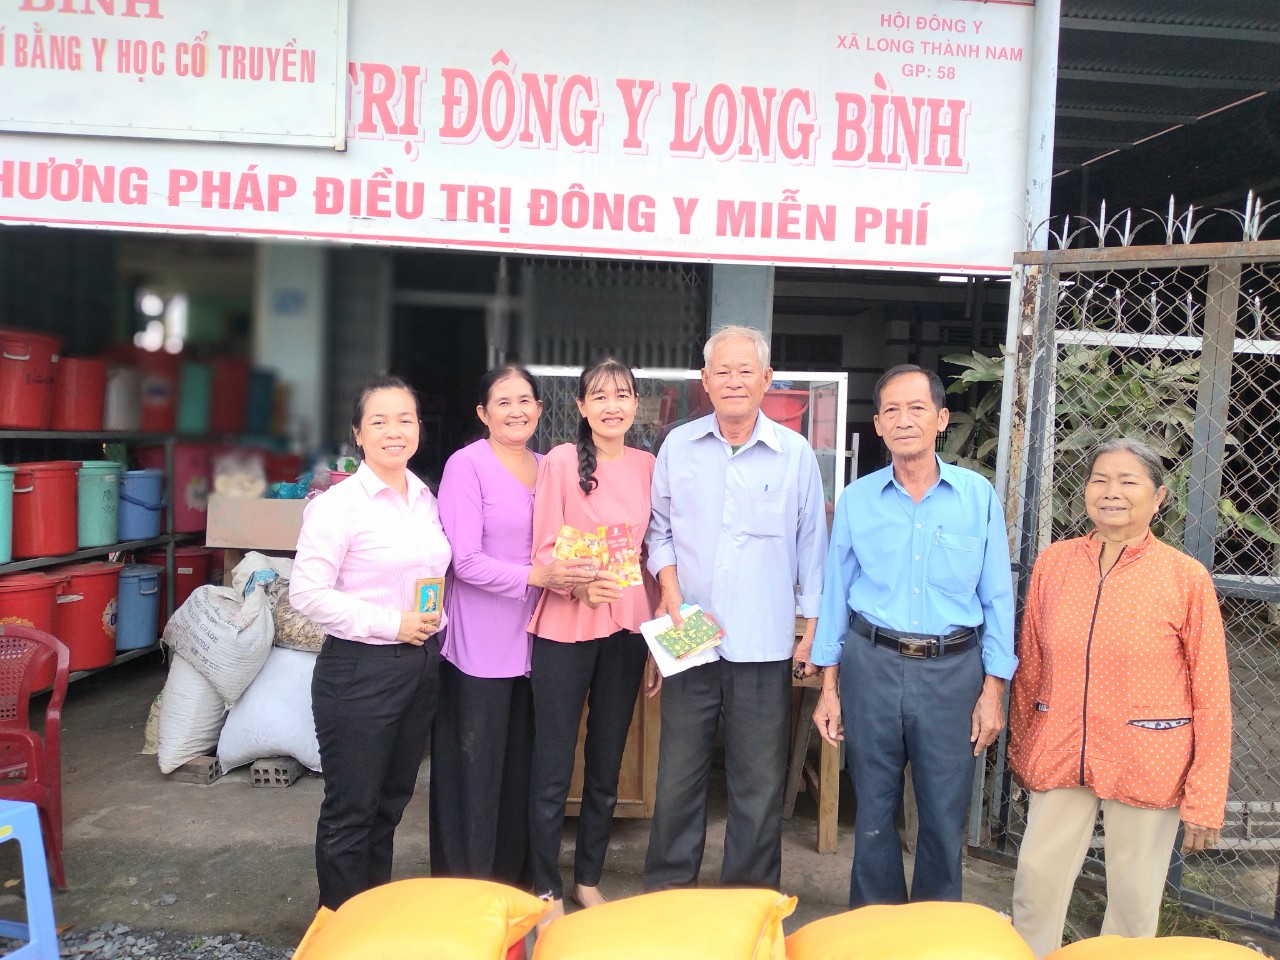 UBND xã Long Thành Nam phối hợp Hội Người Cao tuổi xã vận động mạnh thường quân trao tặng quà cho hộ nghèo, hộ cận nghèo cho người dân trên địa bàn xã